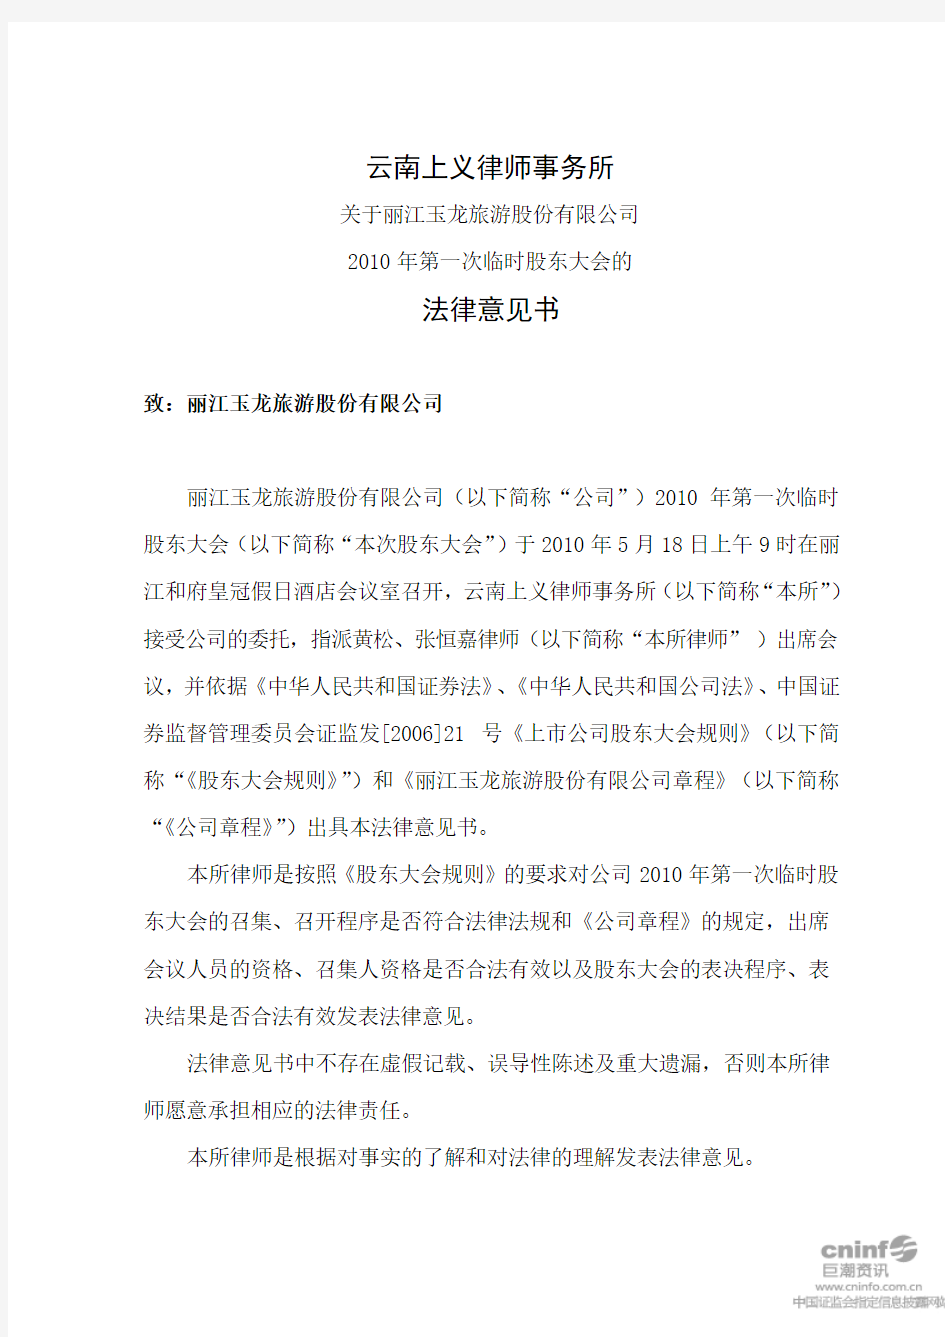 丽江旅游：2010年第一次临时股东大会的法律意见书 2010-05-19